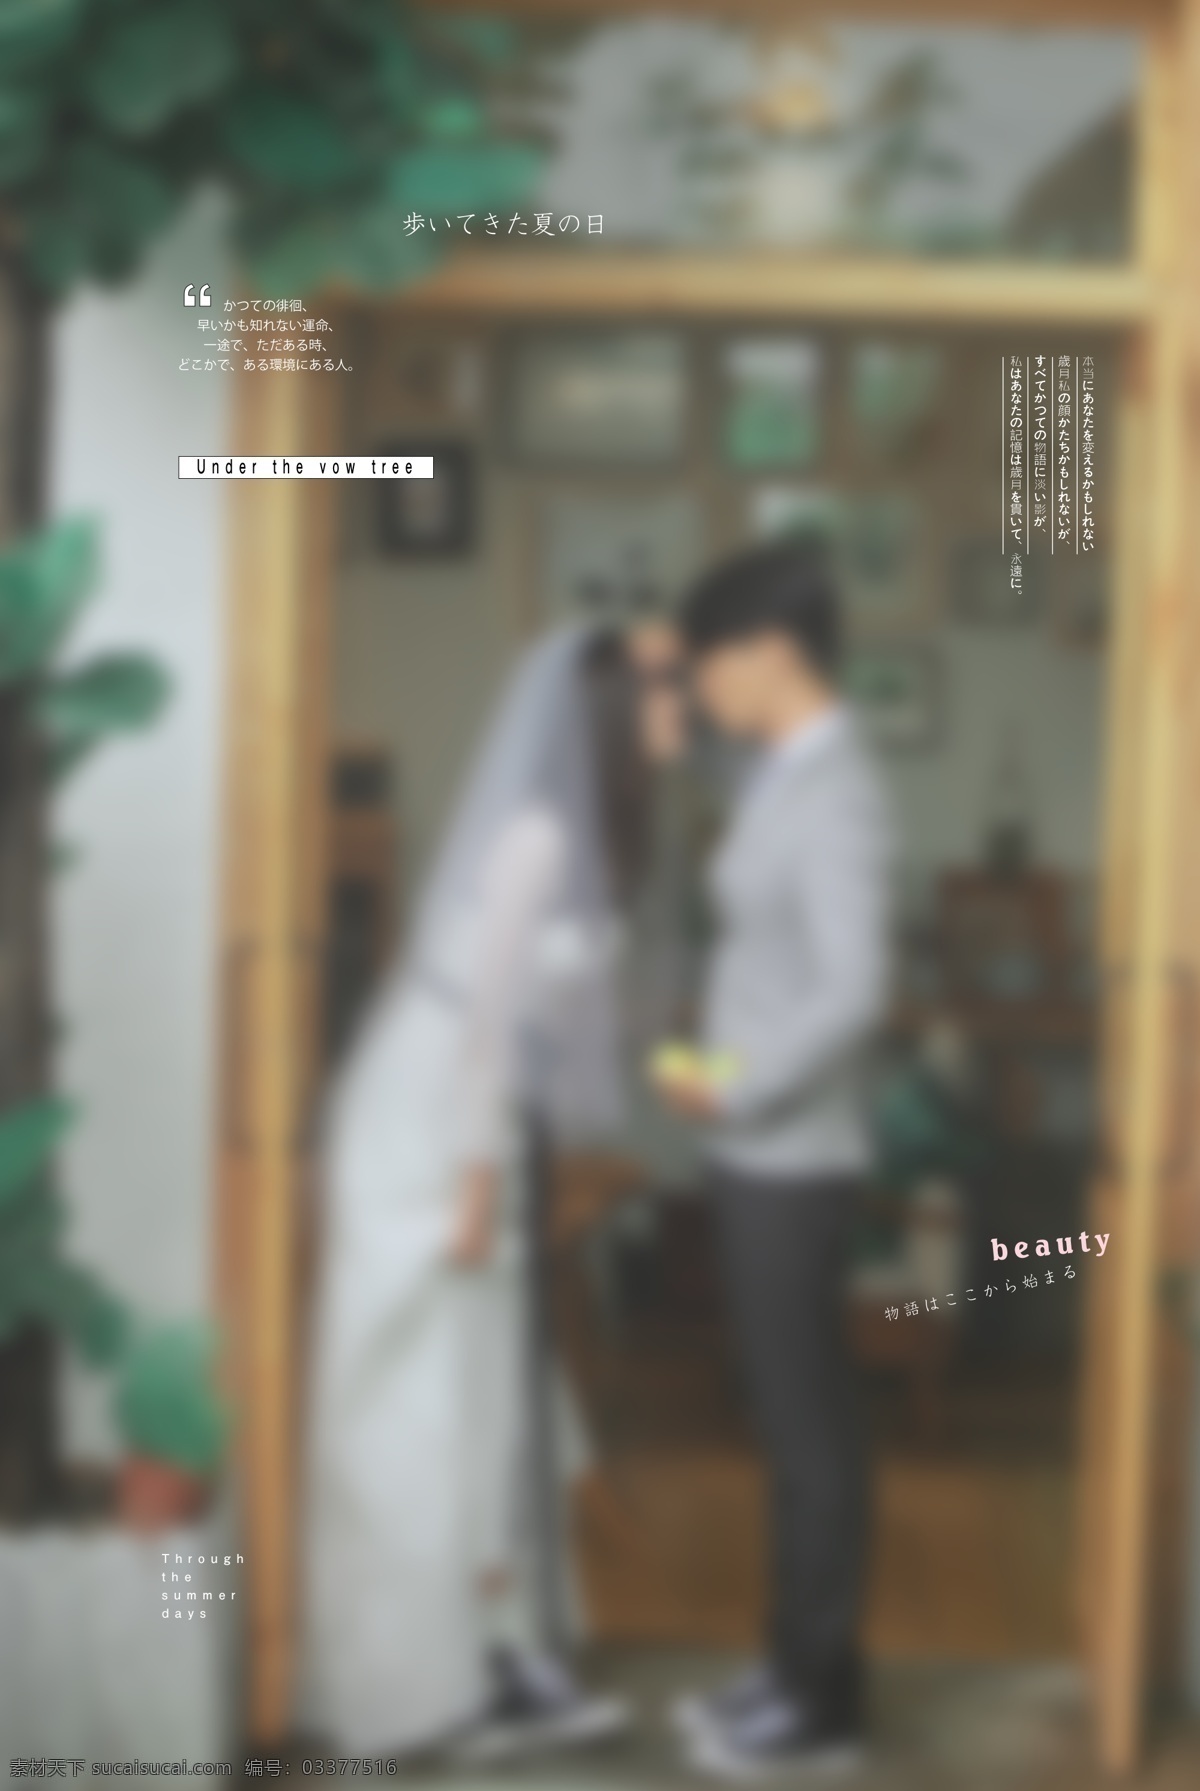 日 系 旅 拍 婚纱 情侣 设计素材 婚纱照 日系 旅拍 后期 分层 字体